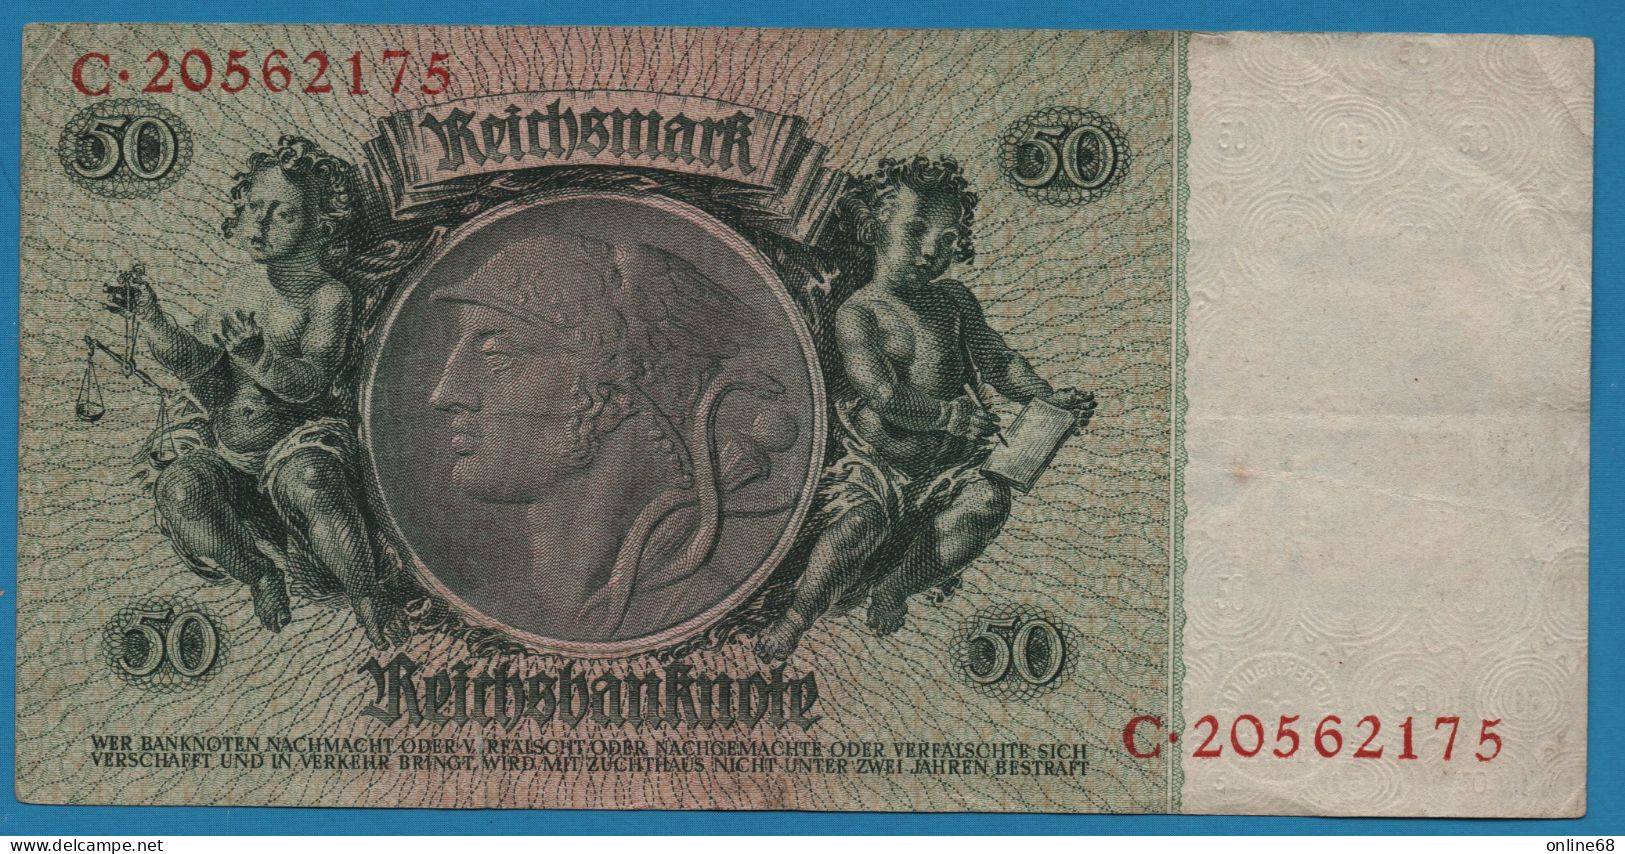 DEUTSCHES REICH 50 REICHSMARK 30.03.1933 LETTER L # C.20562175 P# 182a  David Hansemann - 50 Reichsmark